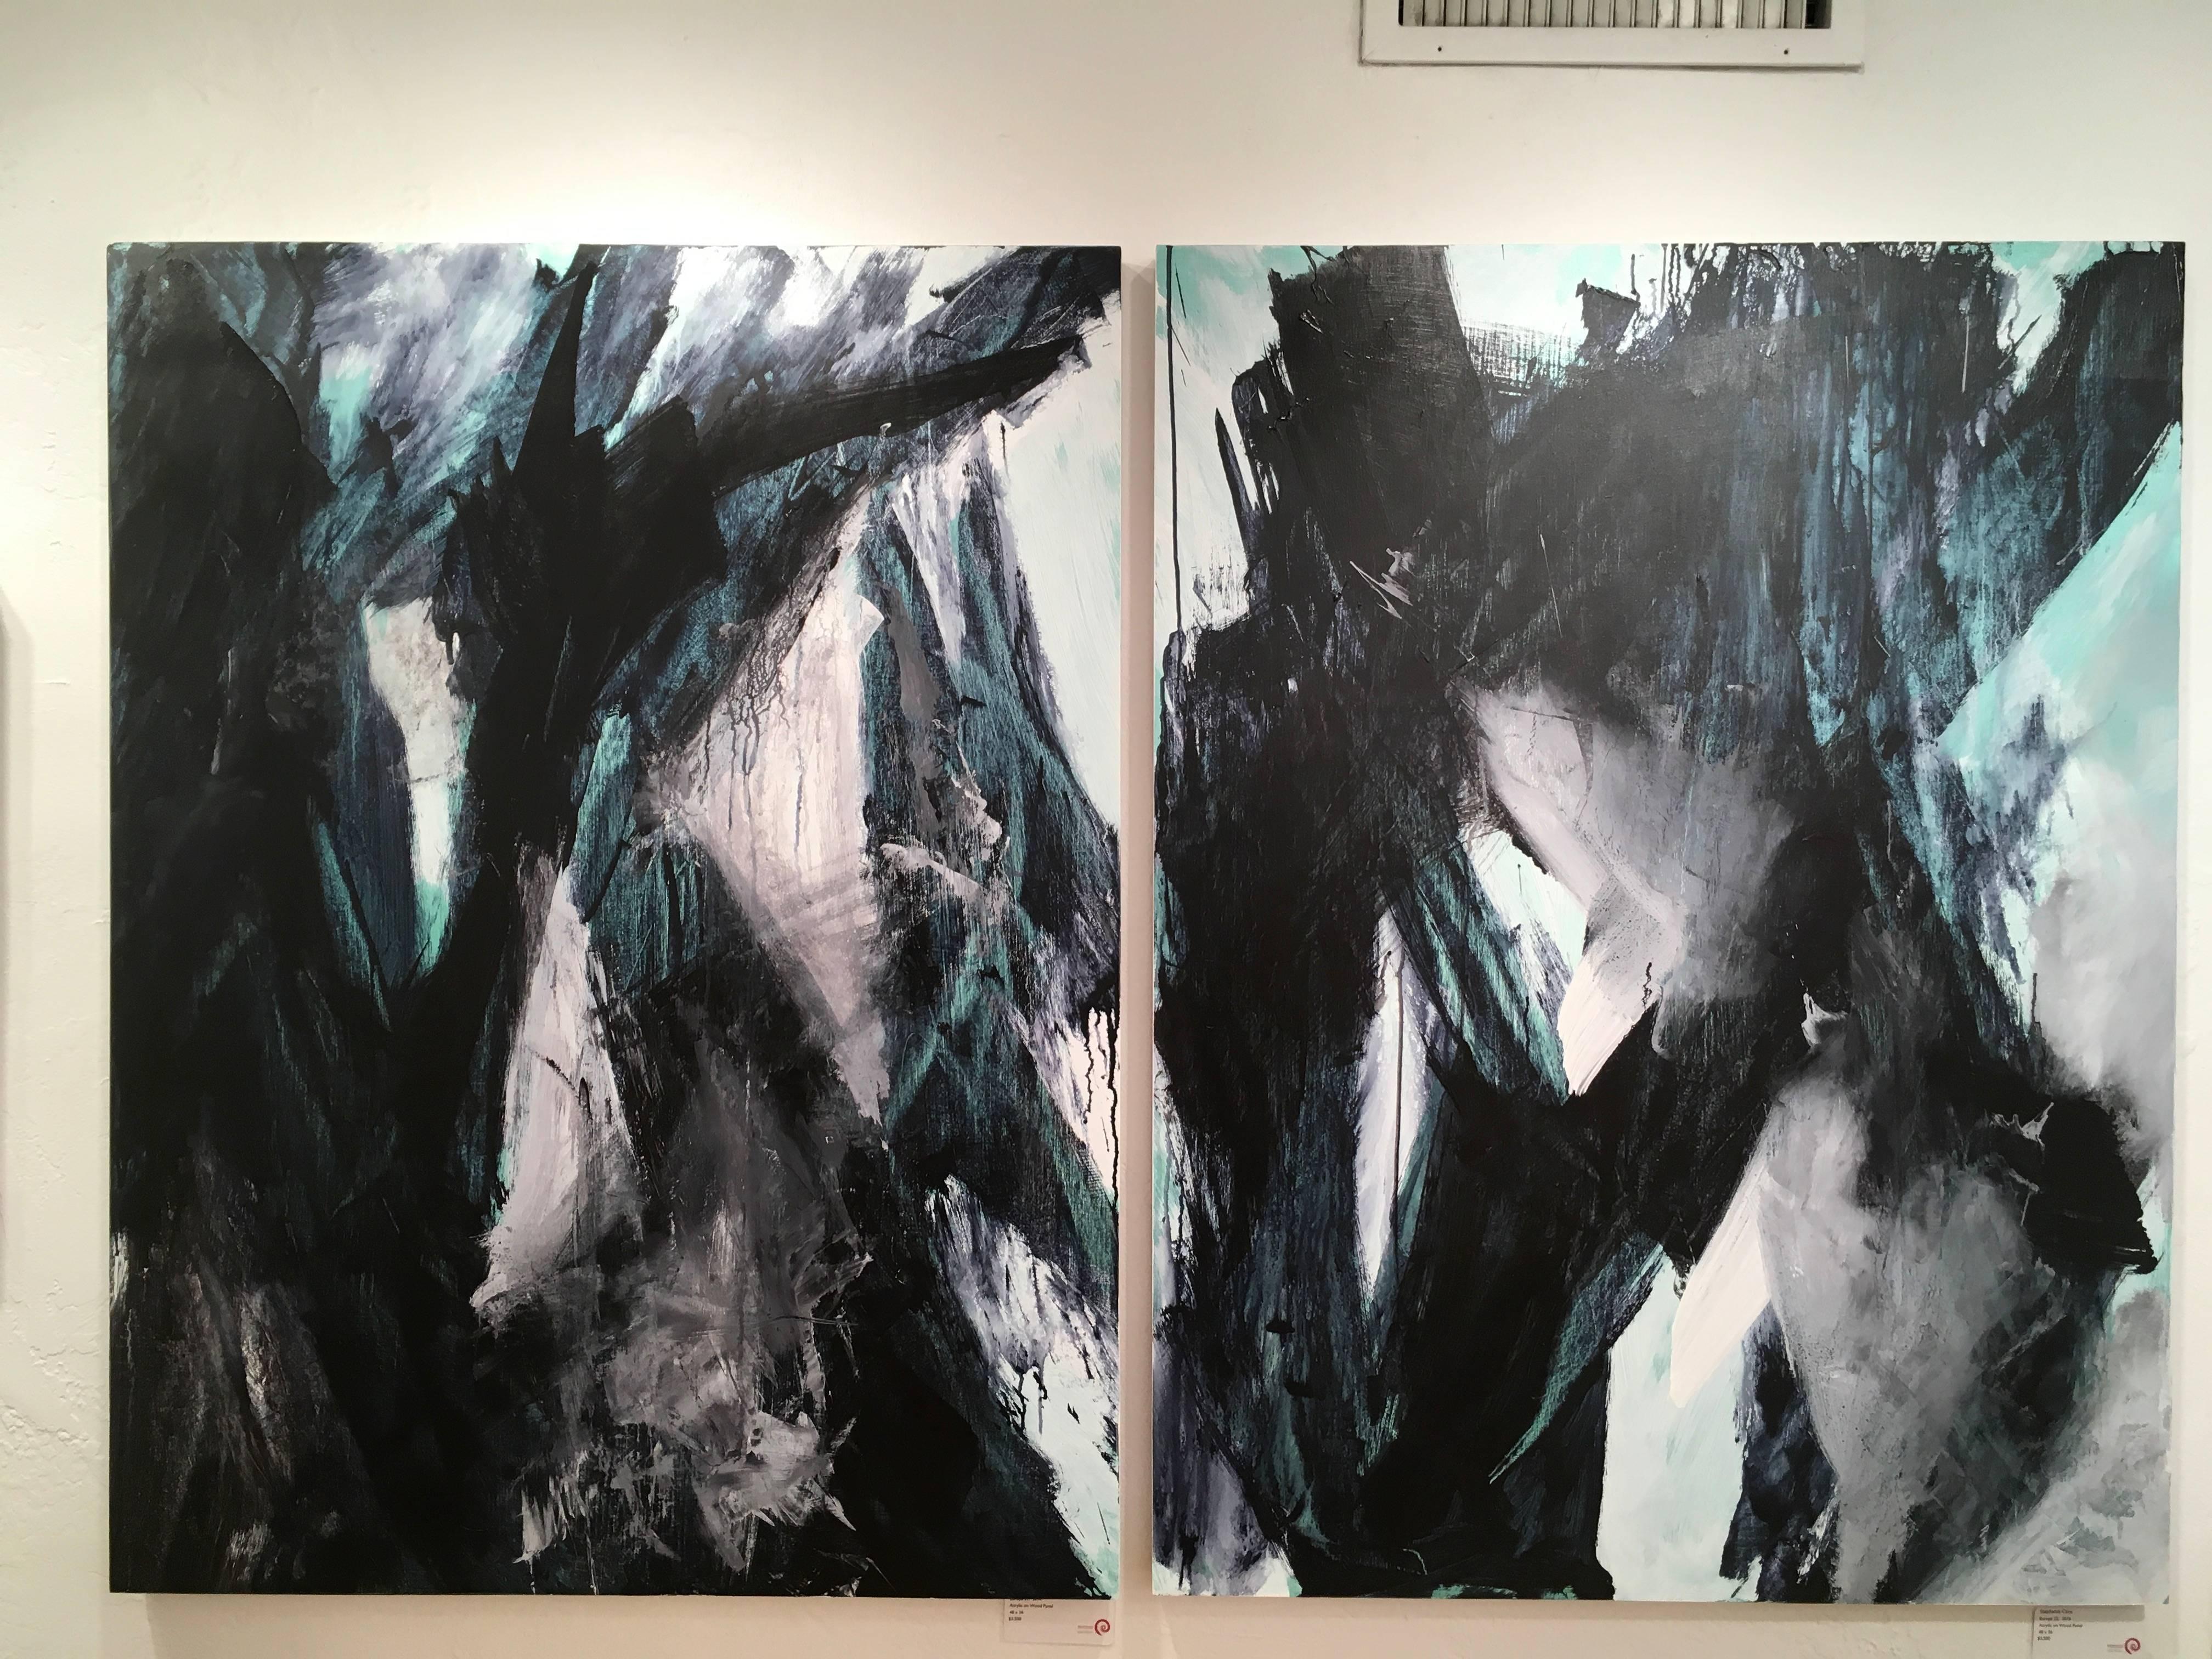 Europa 21 - Peinture abstraite, espace, audacieuse, noir, blanc, vert, acrylique, bois  - Painting de Stephanie Cate